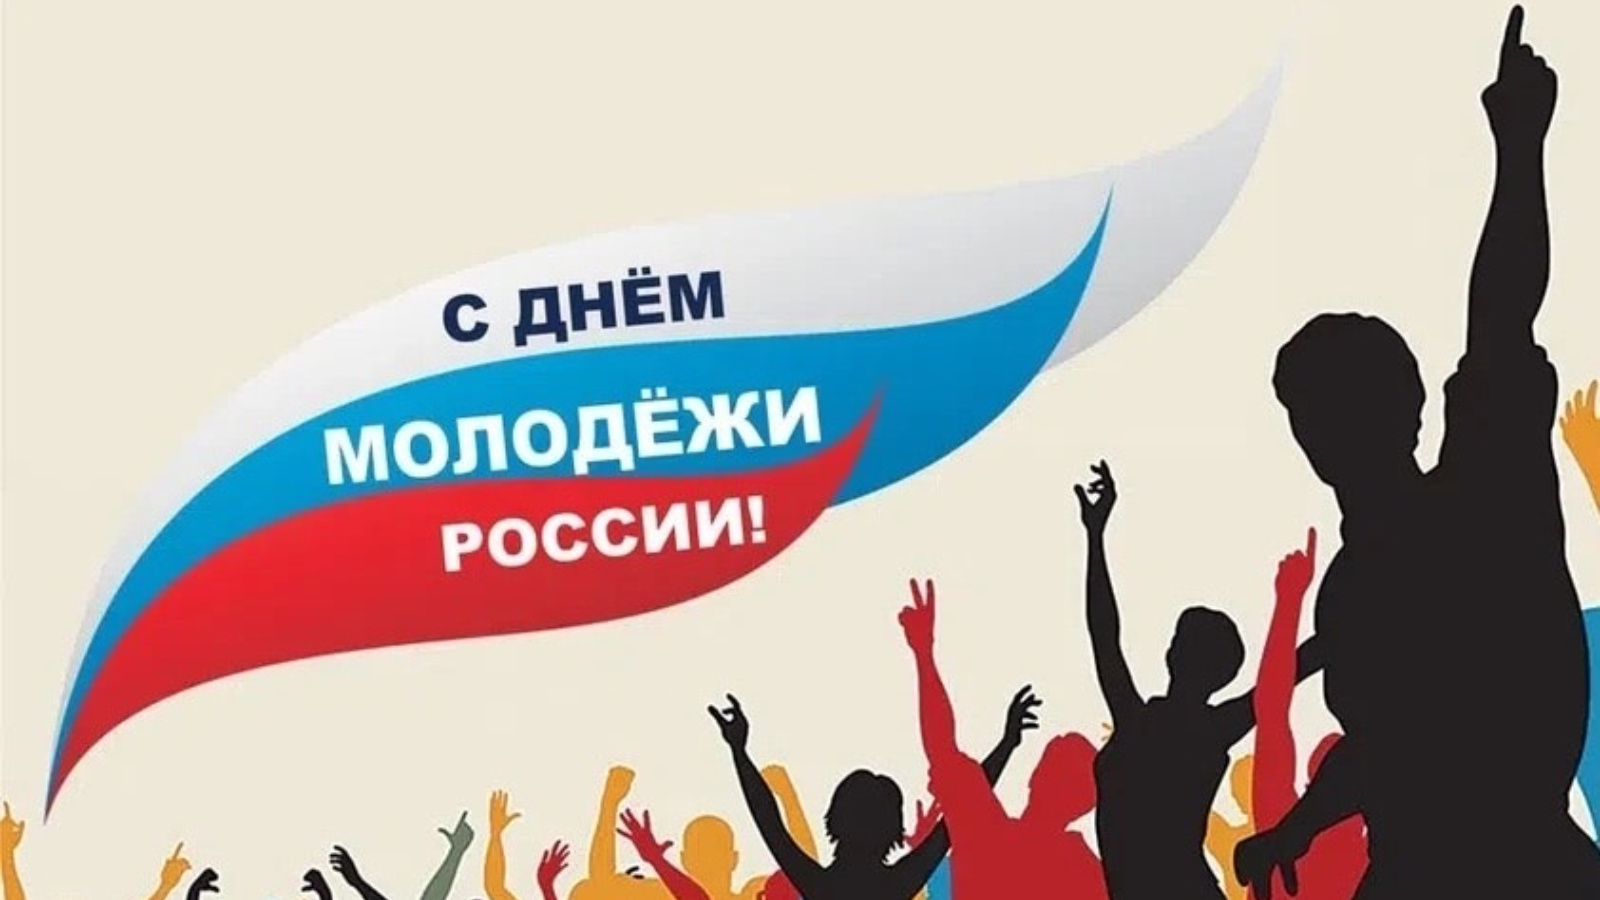 26 27 июня. С днем молодежи. 27 Июня день молодежи. День молодёжи (Россия). С днём молодёжи картинки.